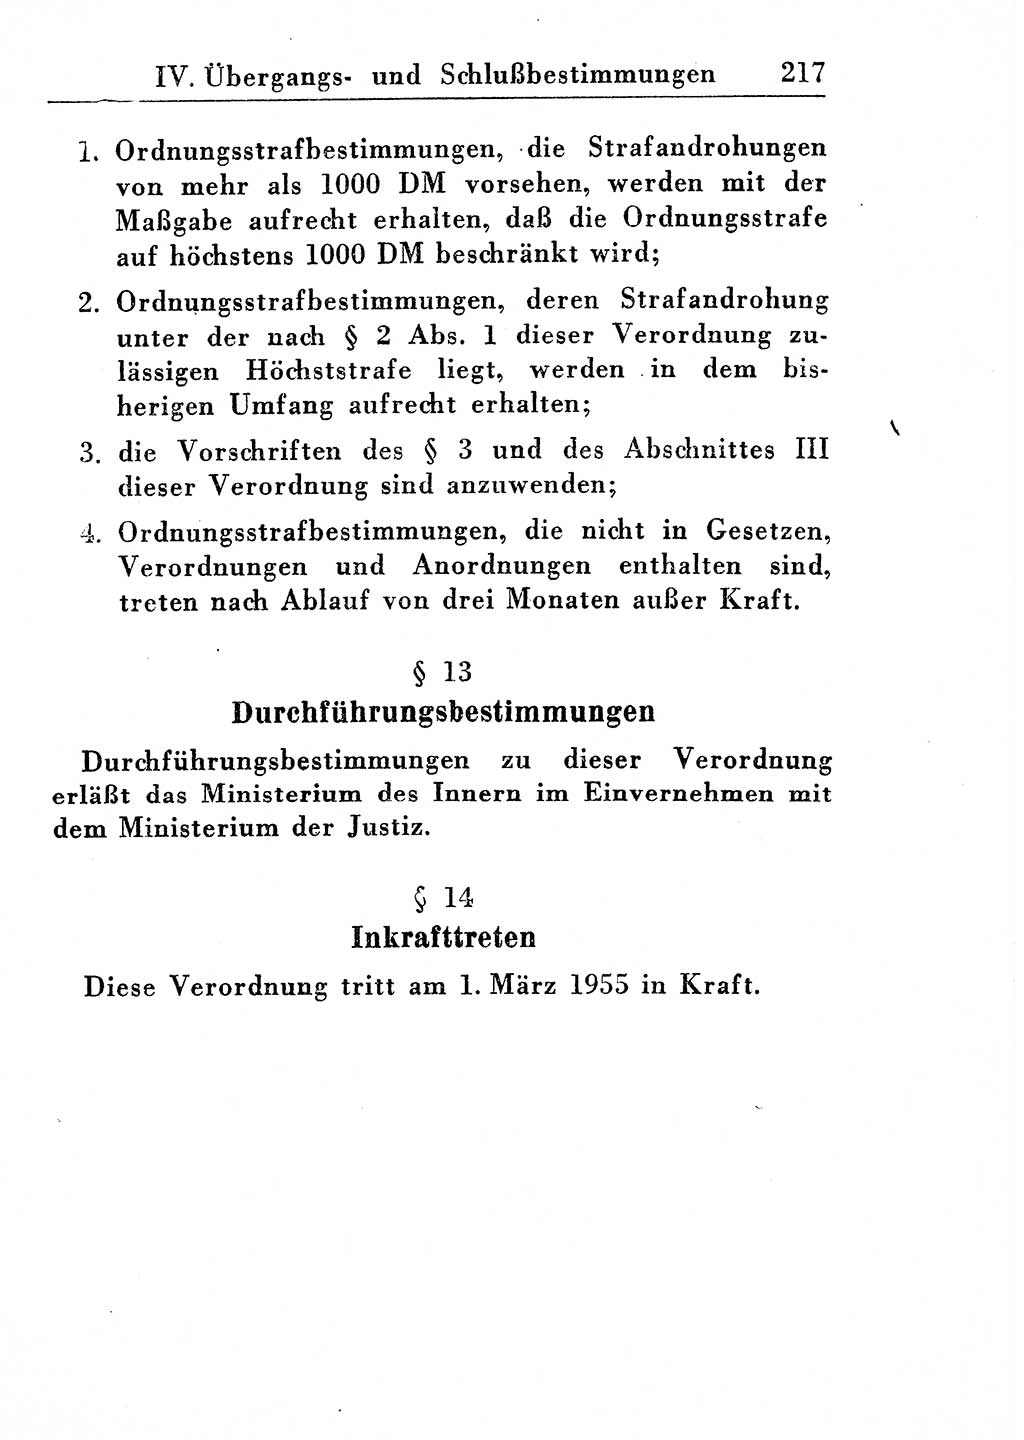 Strafprozeßordnung (StPO), Gerichtsverfassungsgesetz (GVG), Staatsanwaltsgesetz (StAG) und Jugendgerichtsgesetz (JGG) [Deutsche Demokratische Republik (DDR)] 1955, Seite 217 (StPO GVG StAG JGG DDR 1955, S. 217)